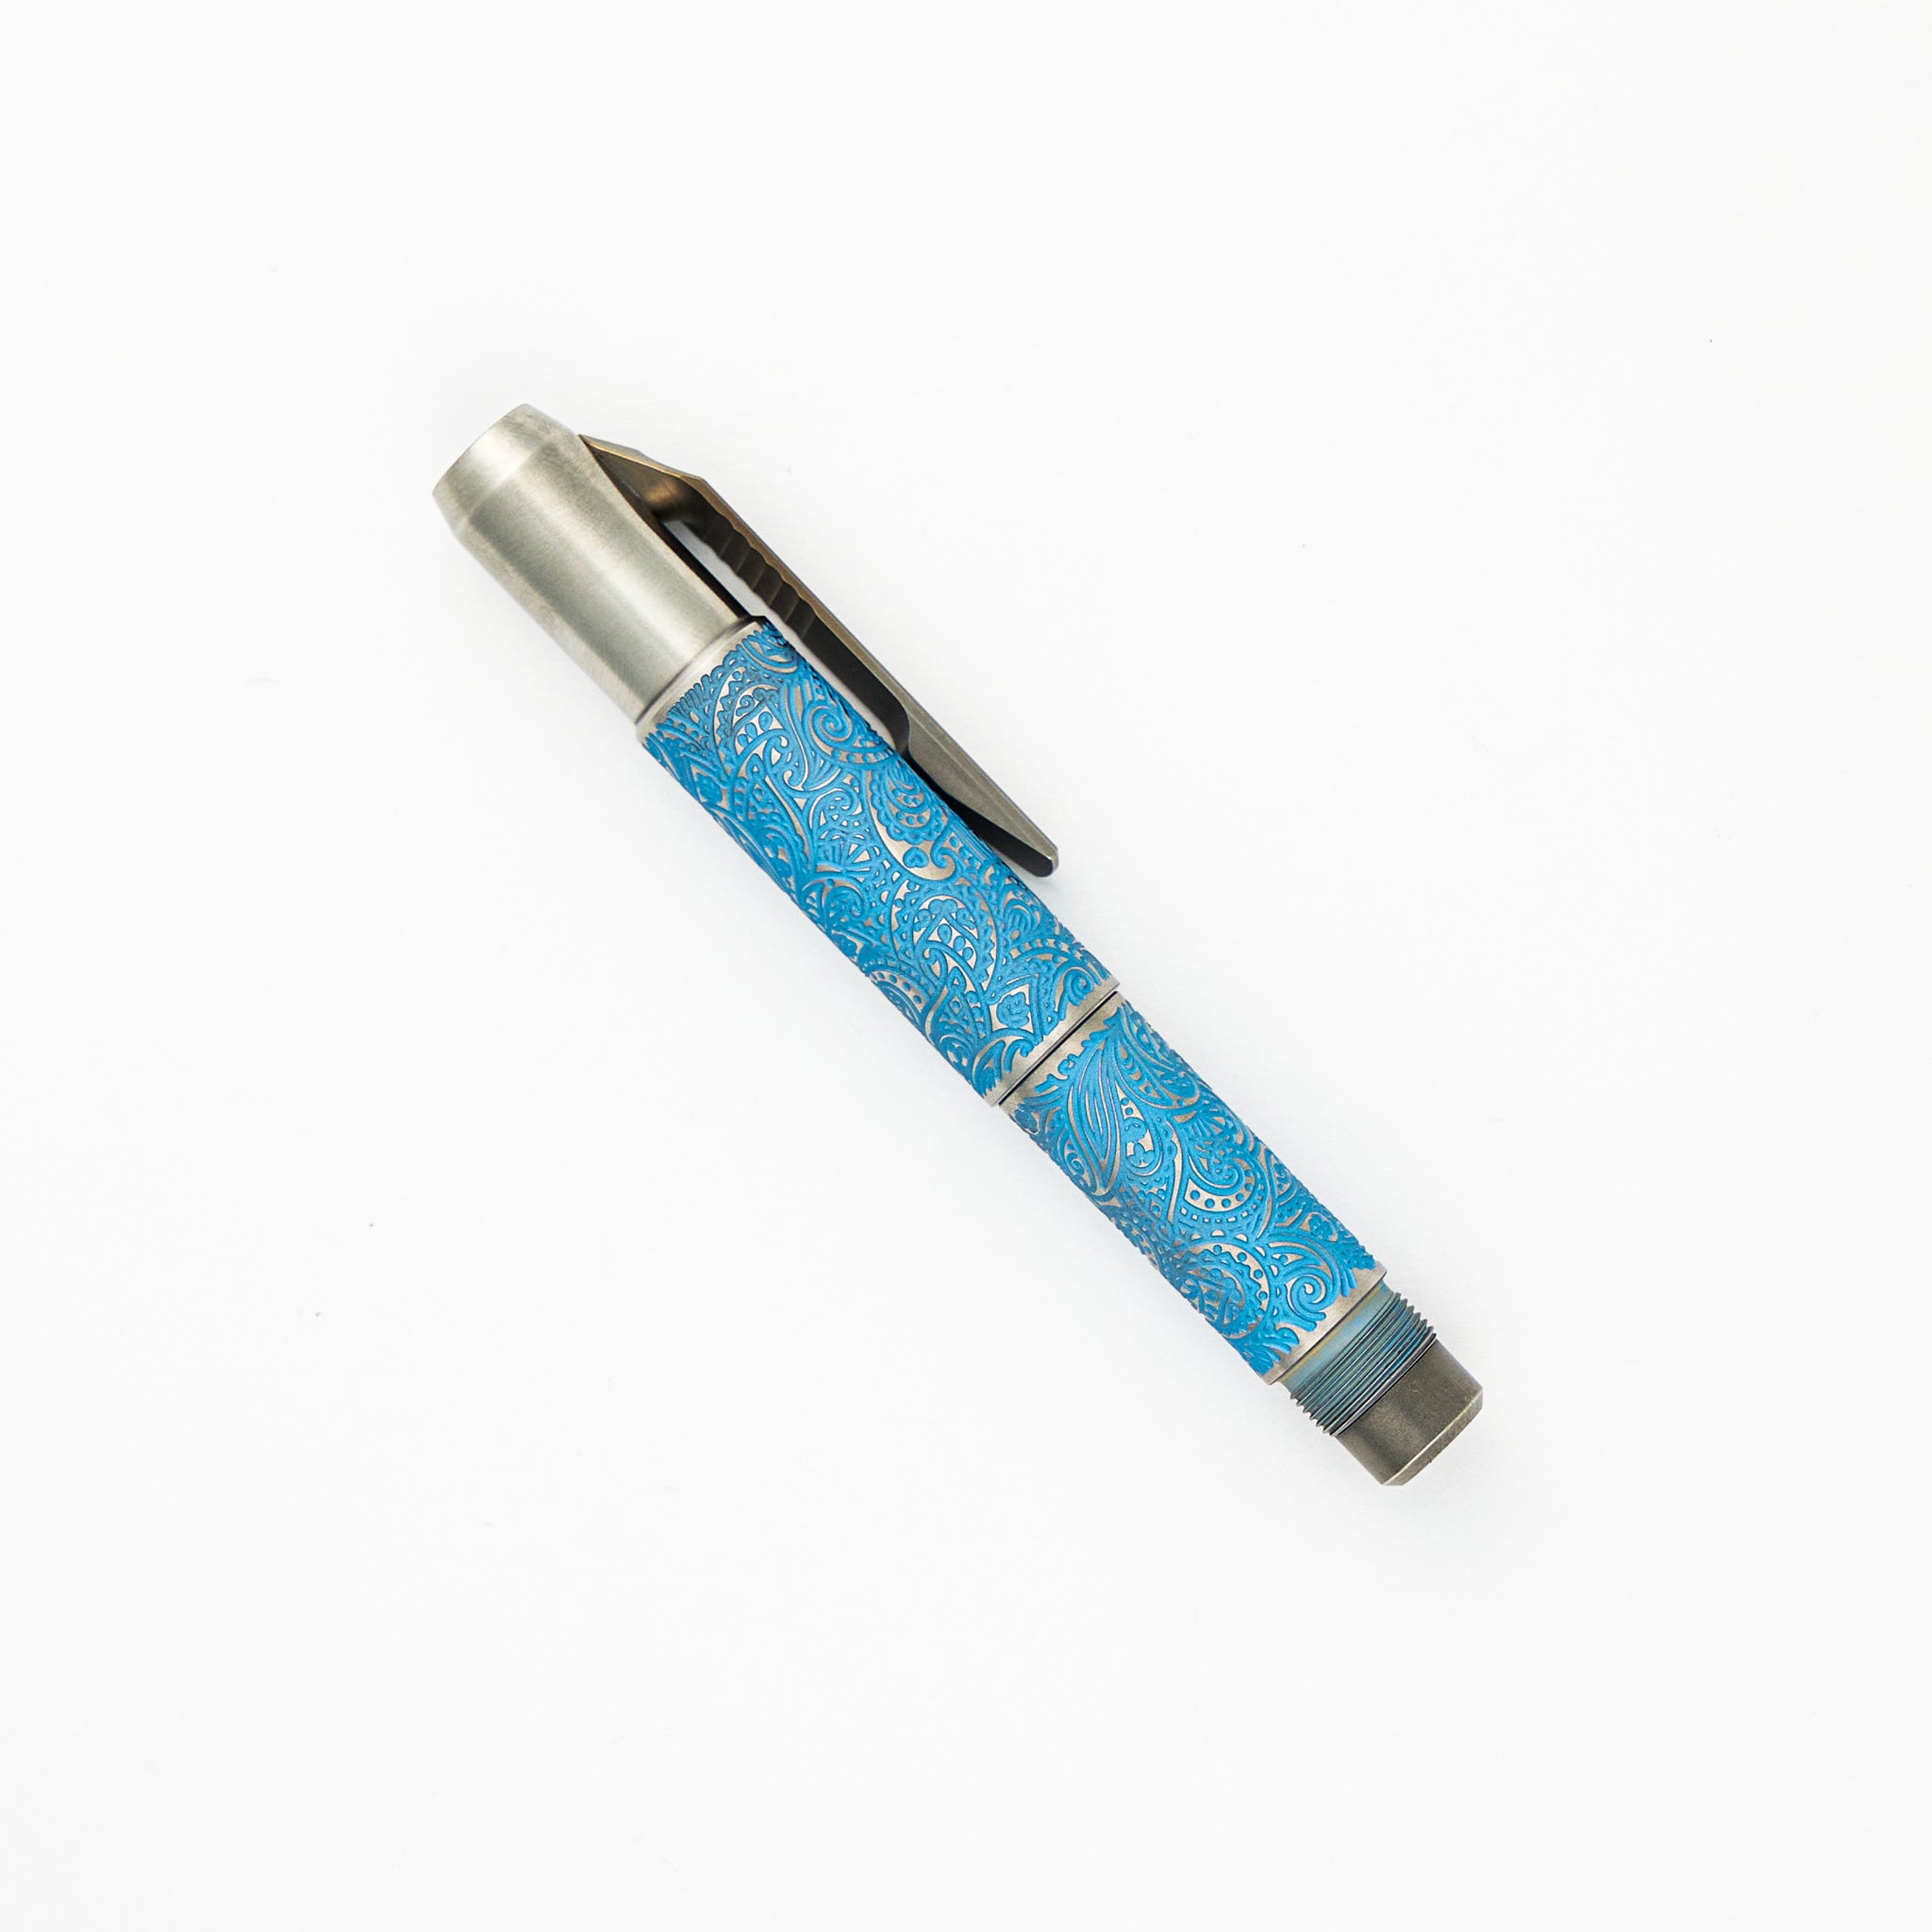 Shirogorov Knives / Ti2 Design Titanium Pivot Tool Pen - Paisley Engraved